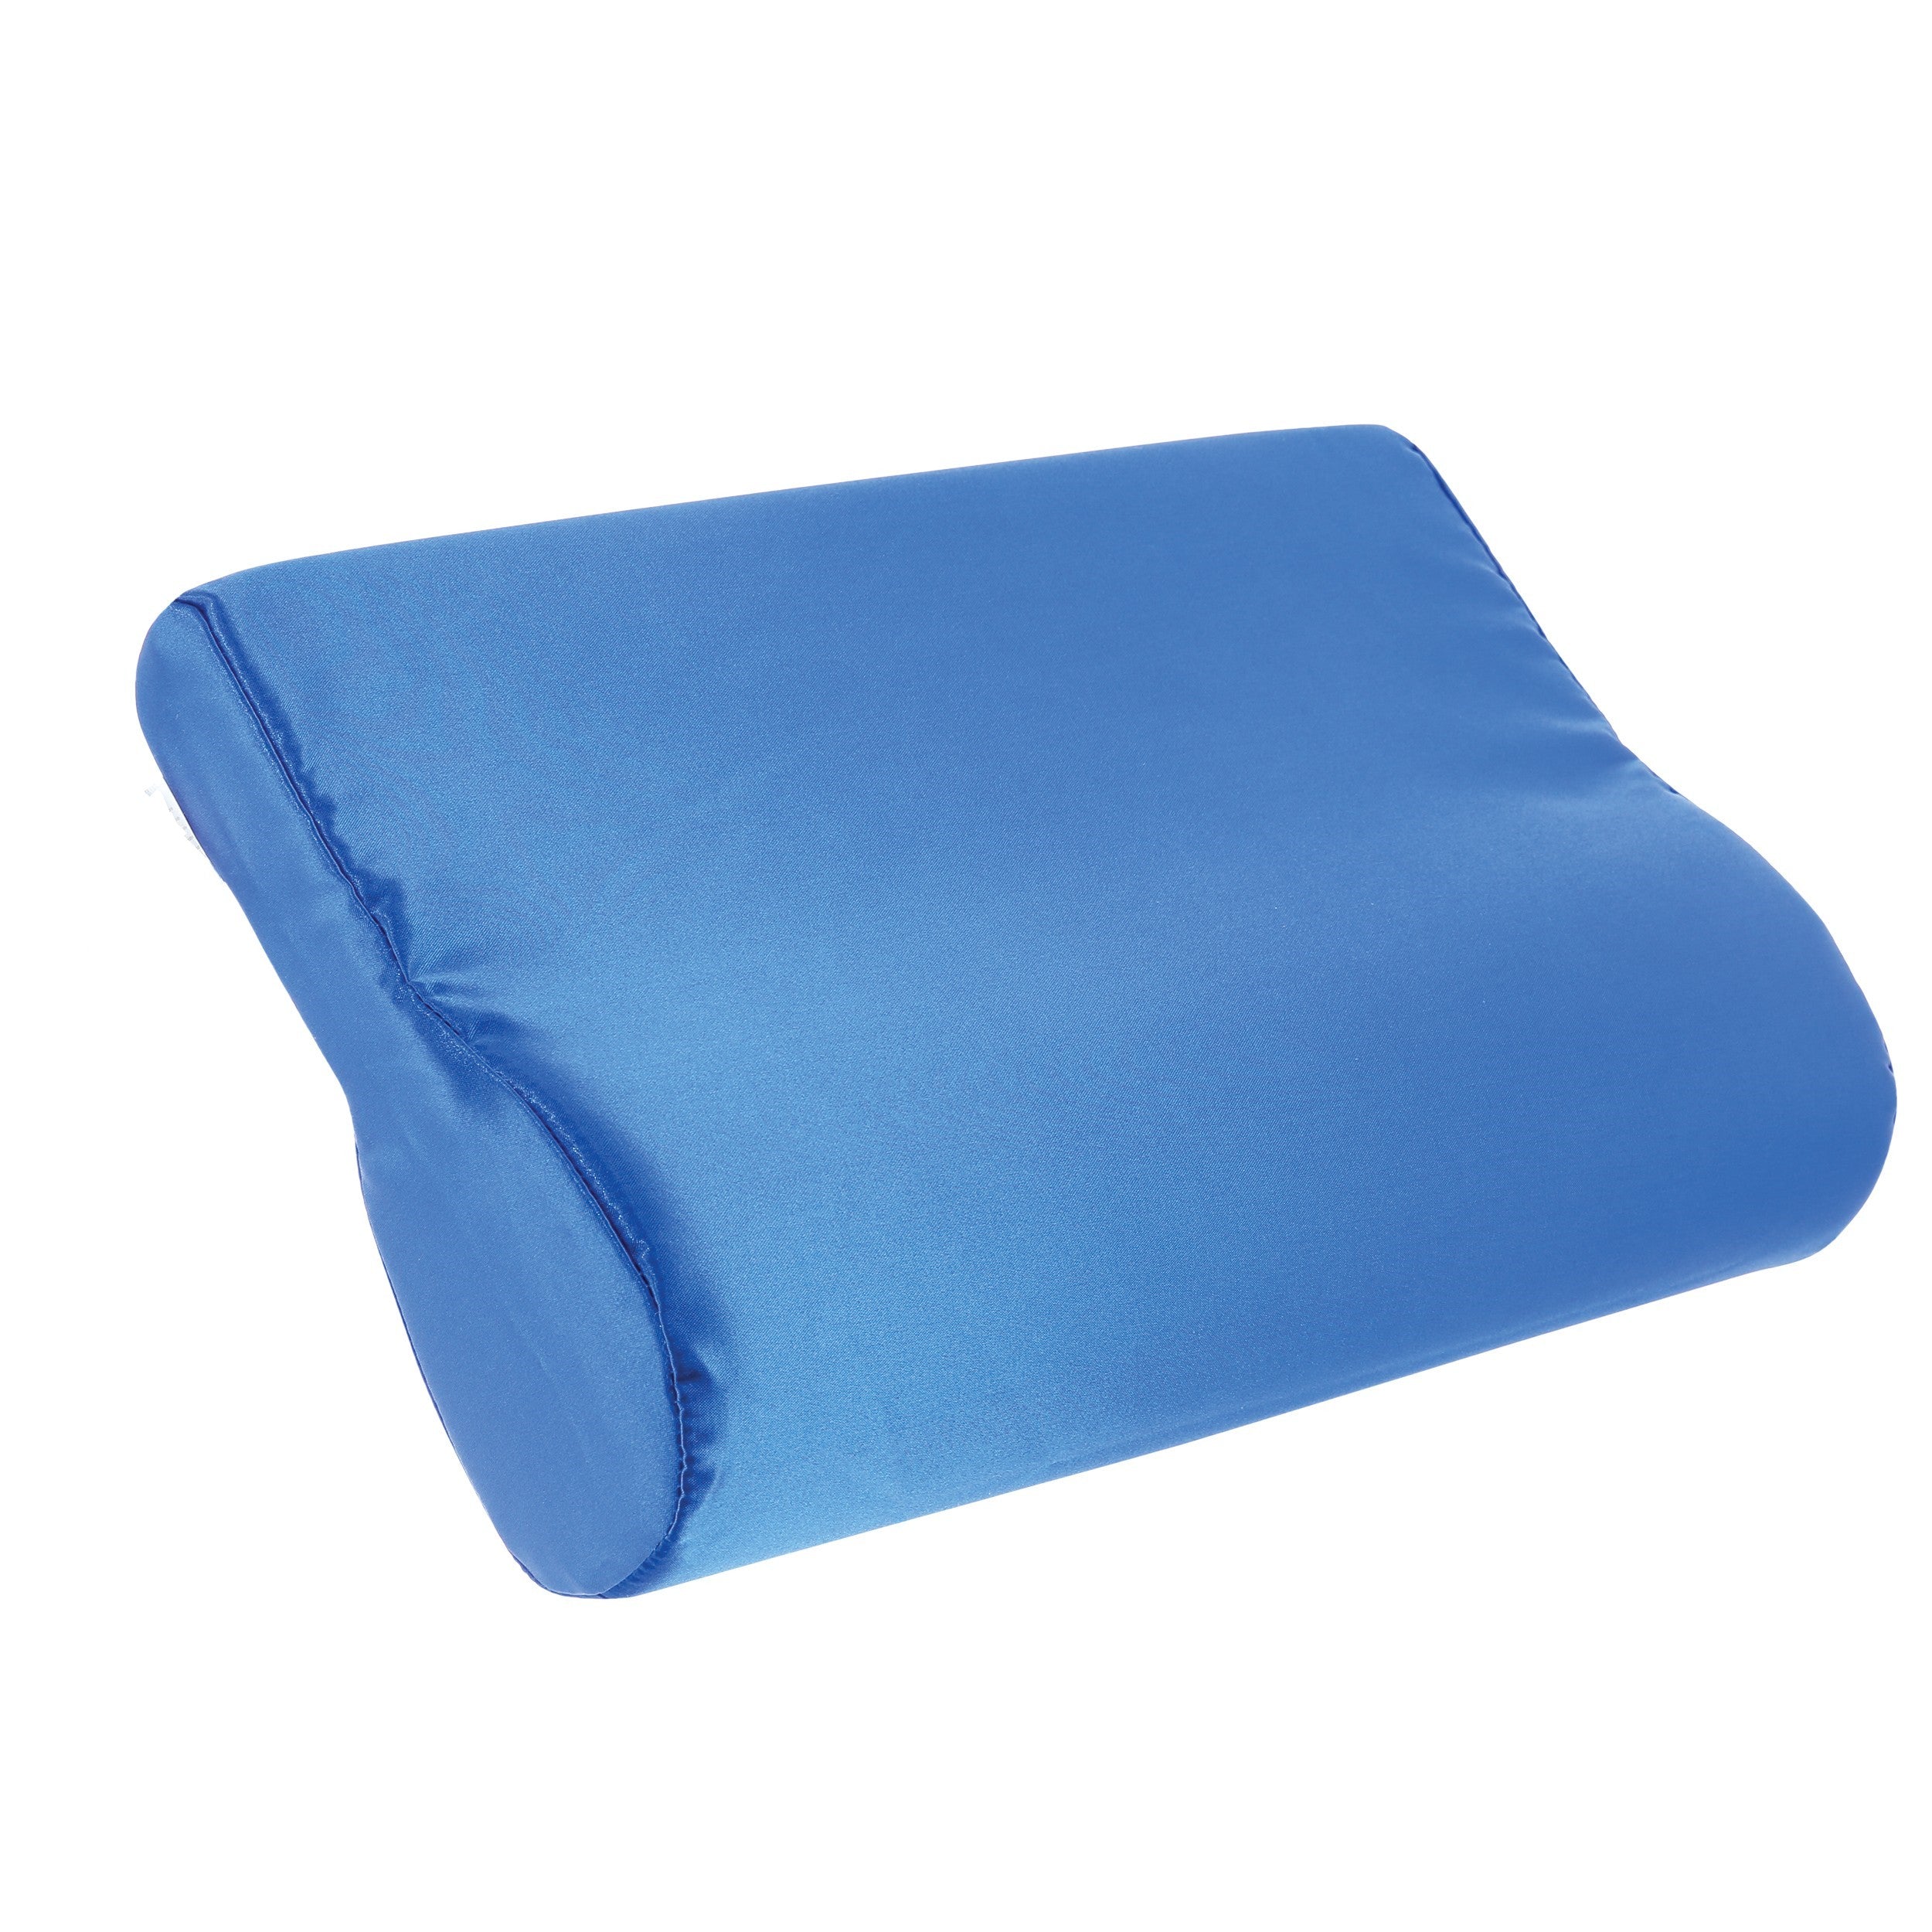 AB Contour Cervical Support Pillow, Satin, Blue